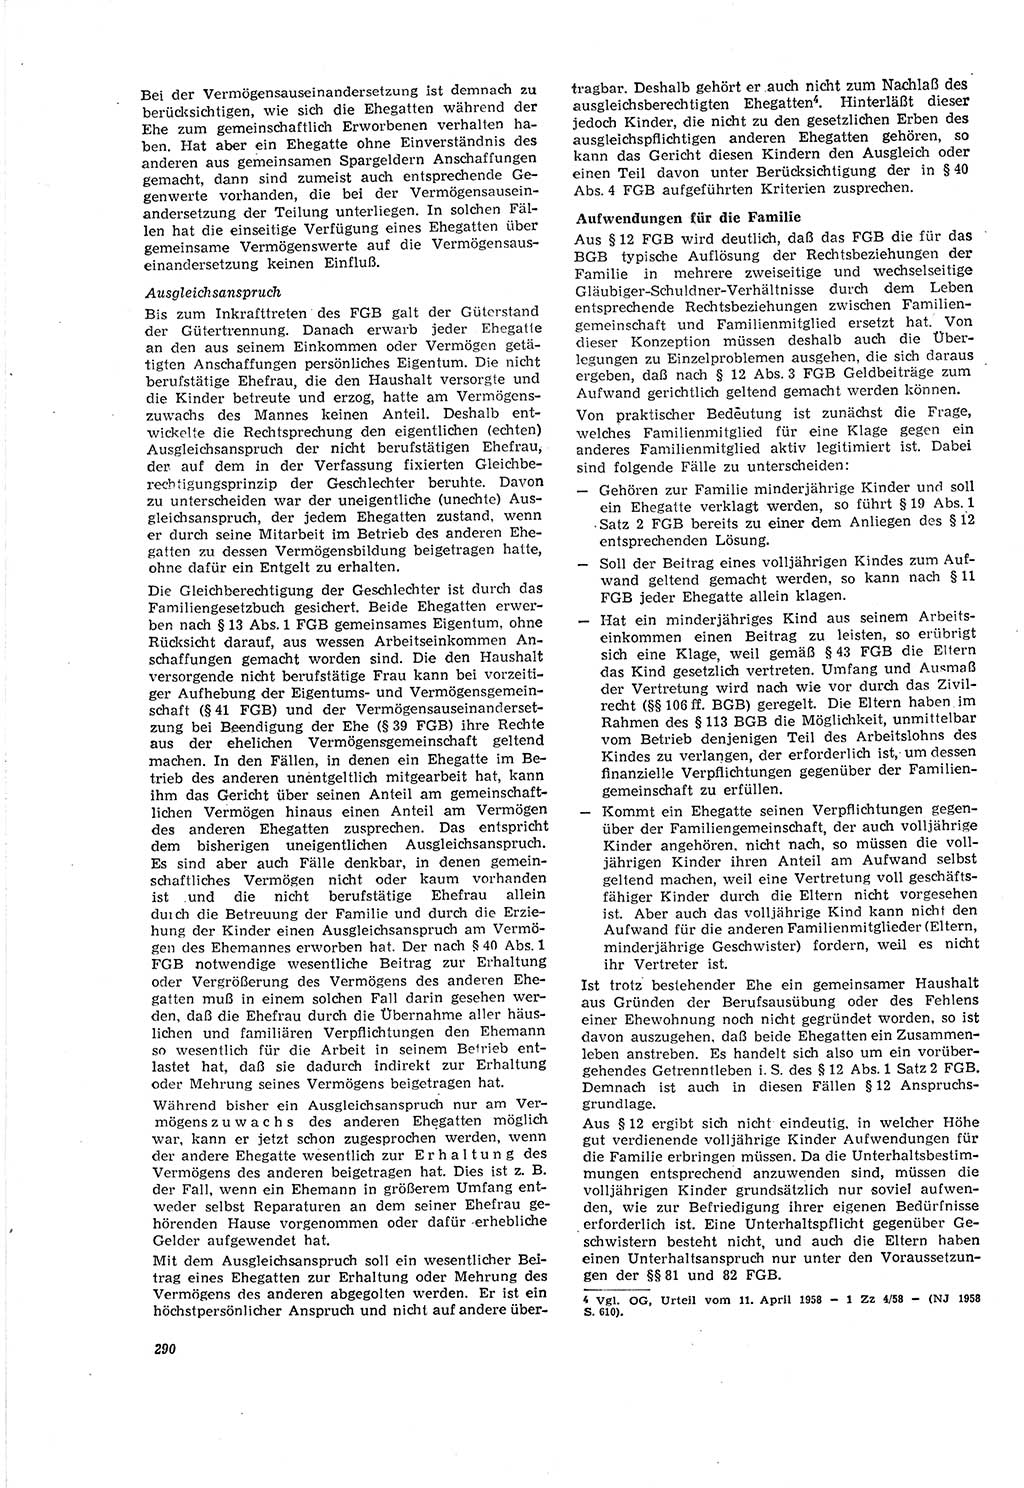 Neue Justiz (NJ), Zeitschrift für Recht und Rechtswissenschaft [Deutsche Demokratische Republik (DDR)], 20. Jahrgang 1966, Seite 290 (NJ DDR 1966, S. 290)